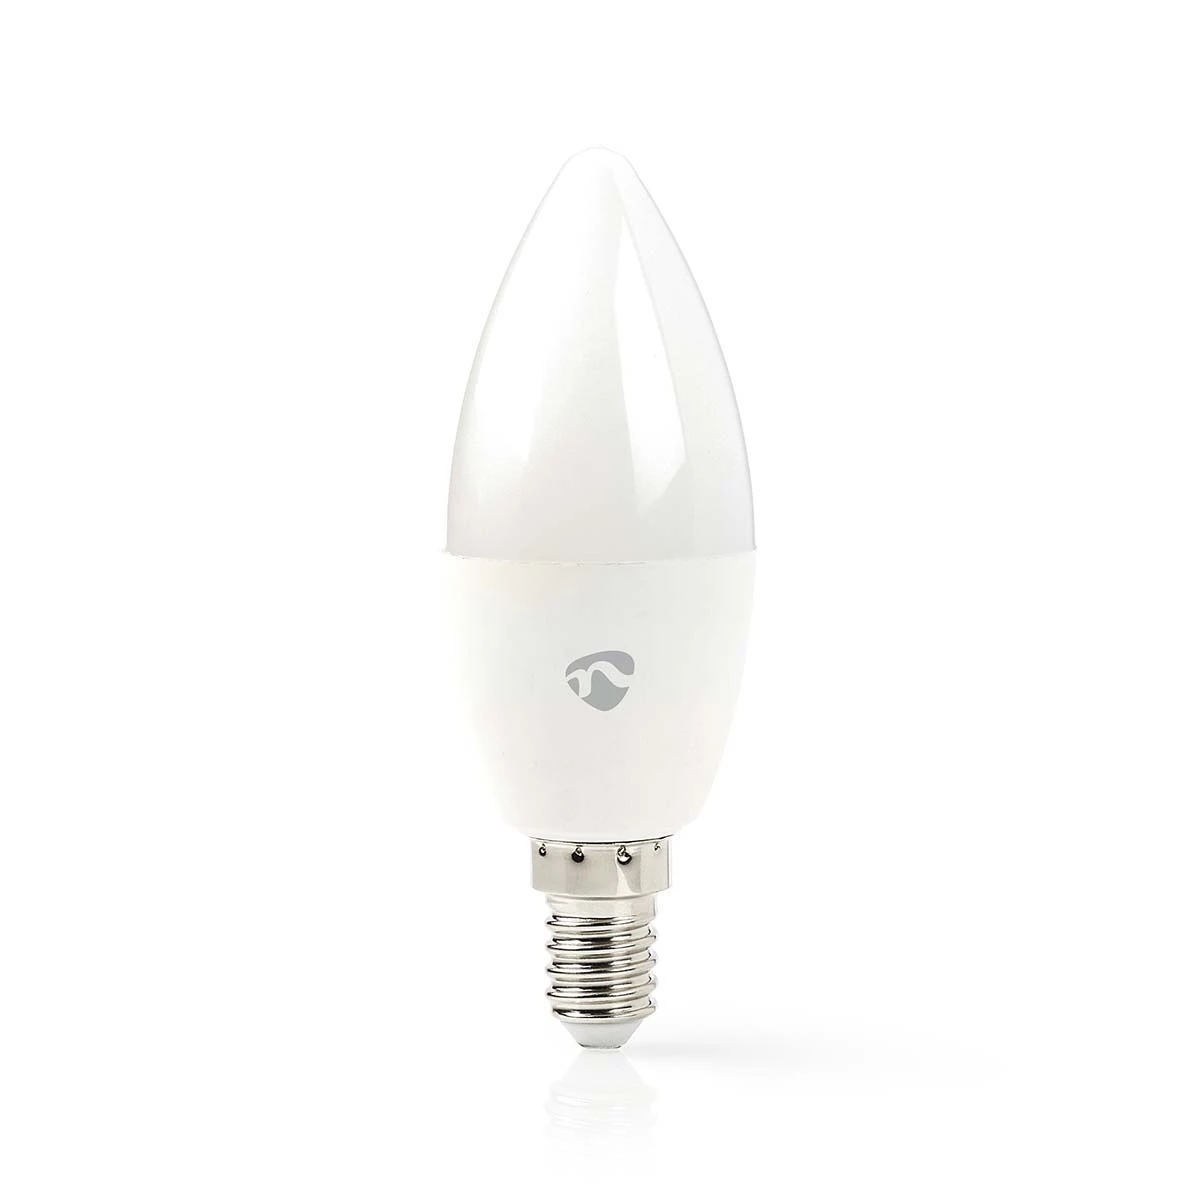 SmartLife-LED-Glühbirne